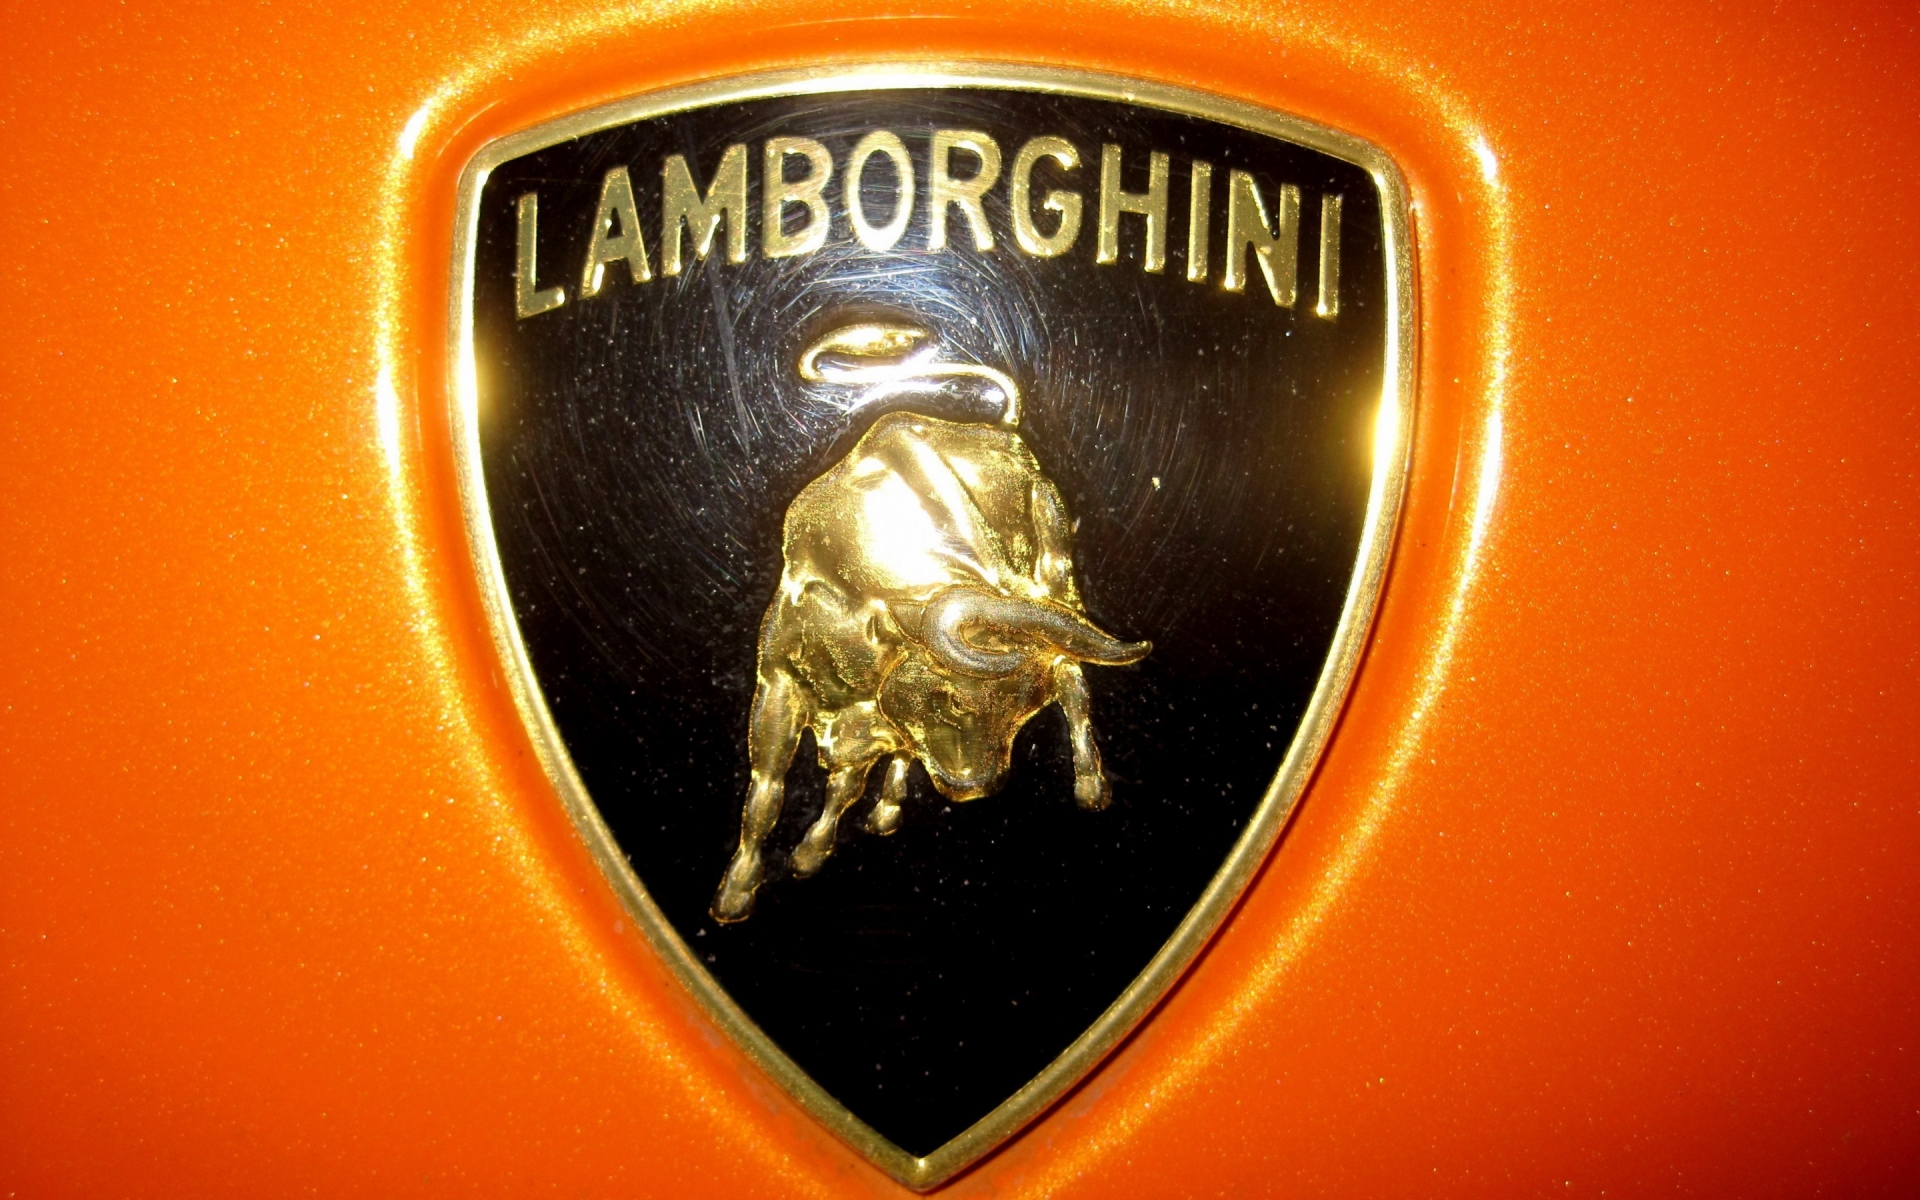 Lamborghini logo for 1920 x 1200 widescreen resolution